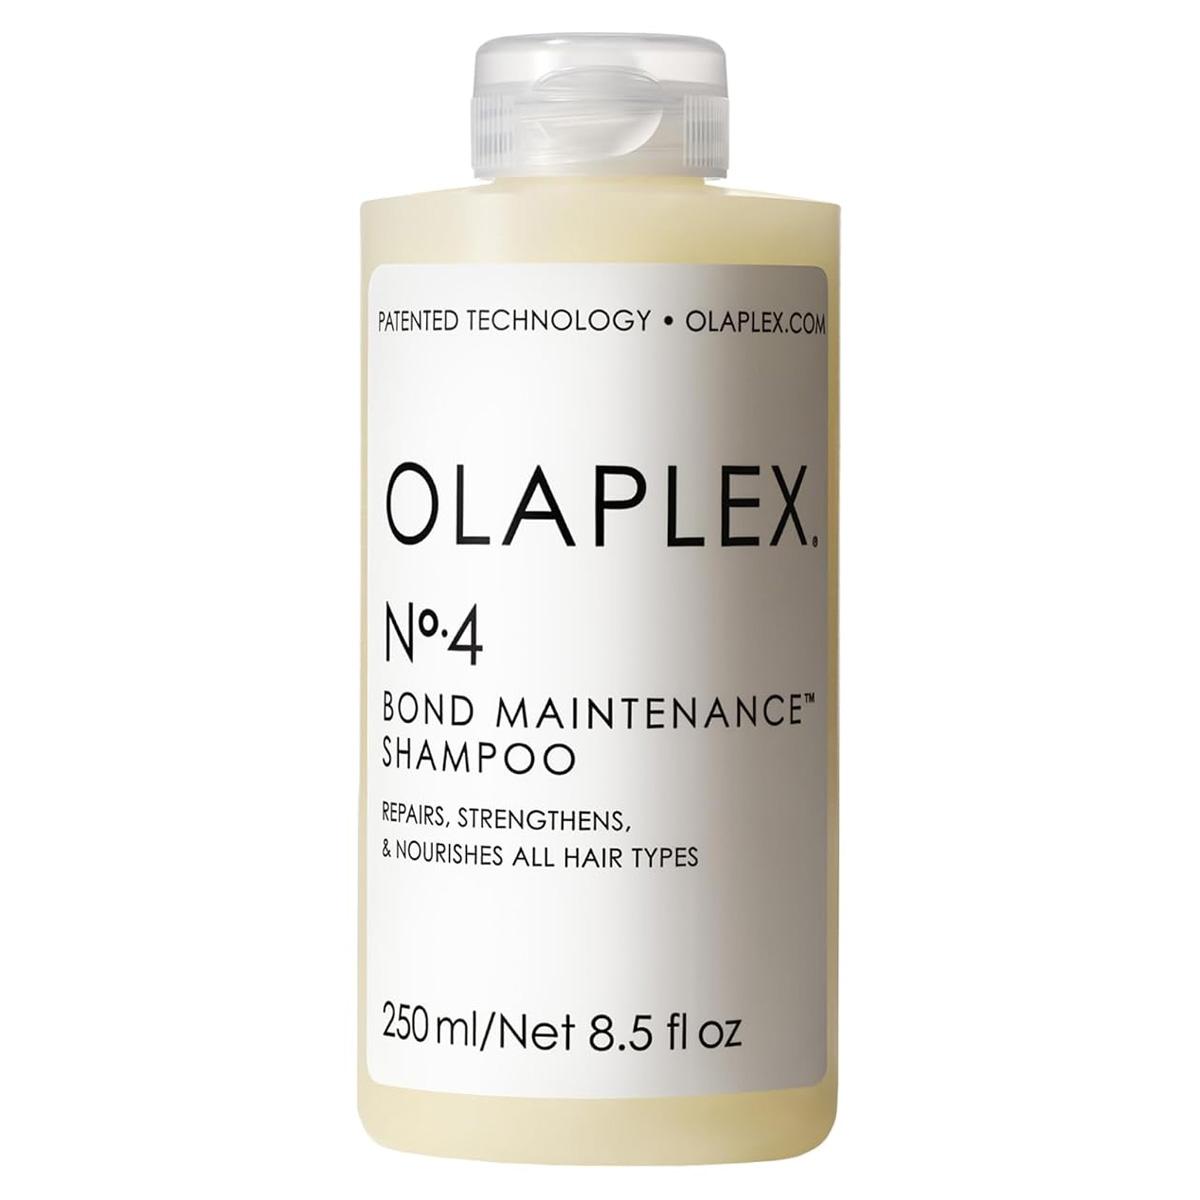 Olaplex No 4 Bond Maintenance Shampoo for $15 Shipped